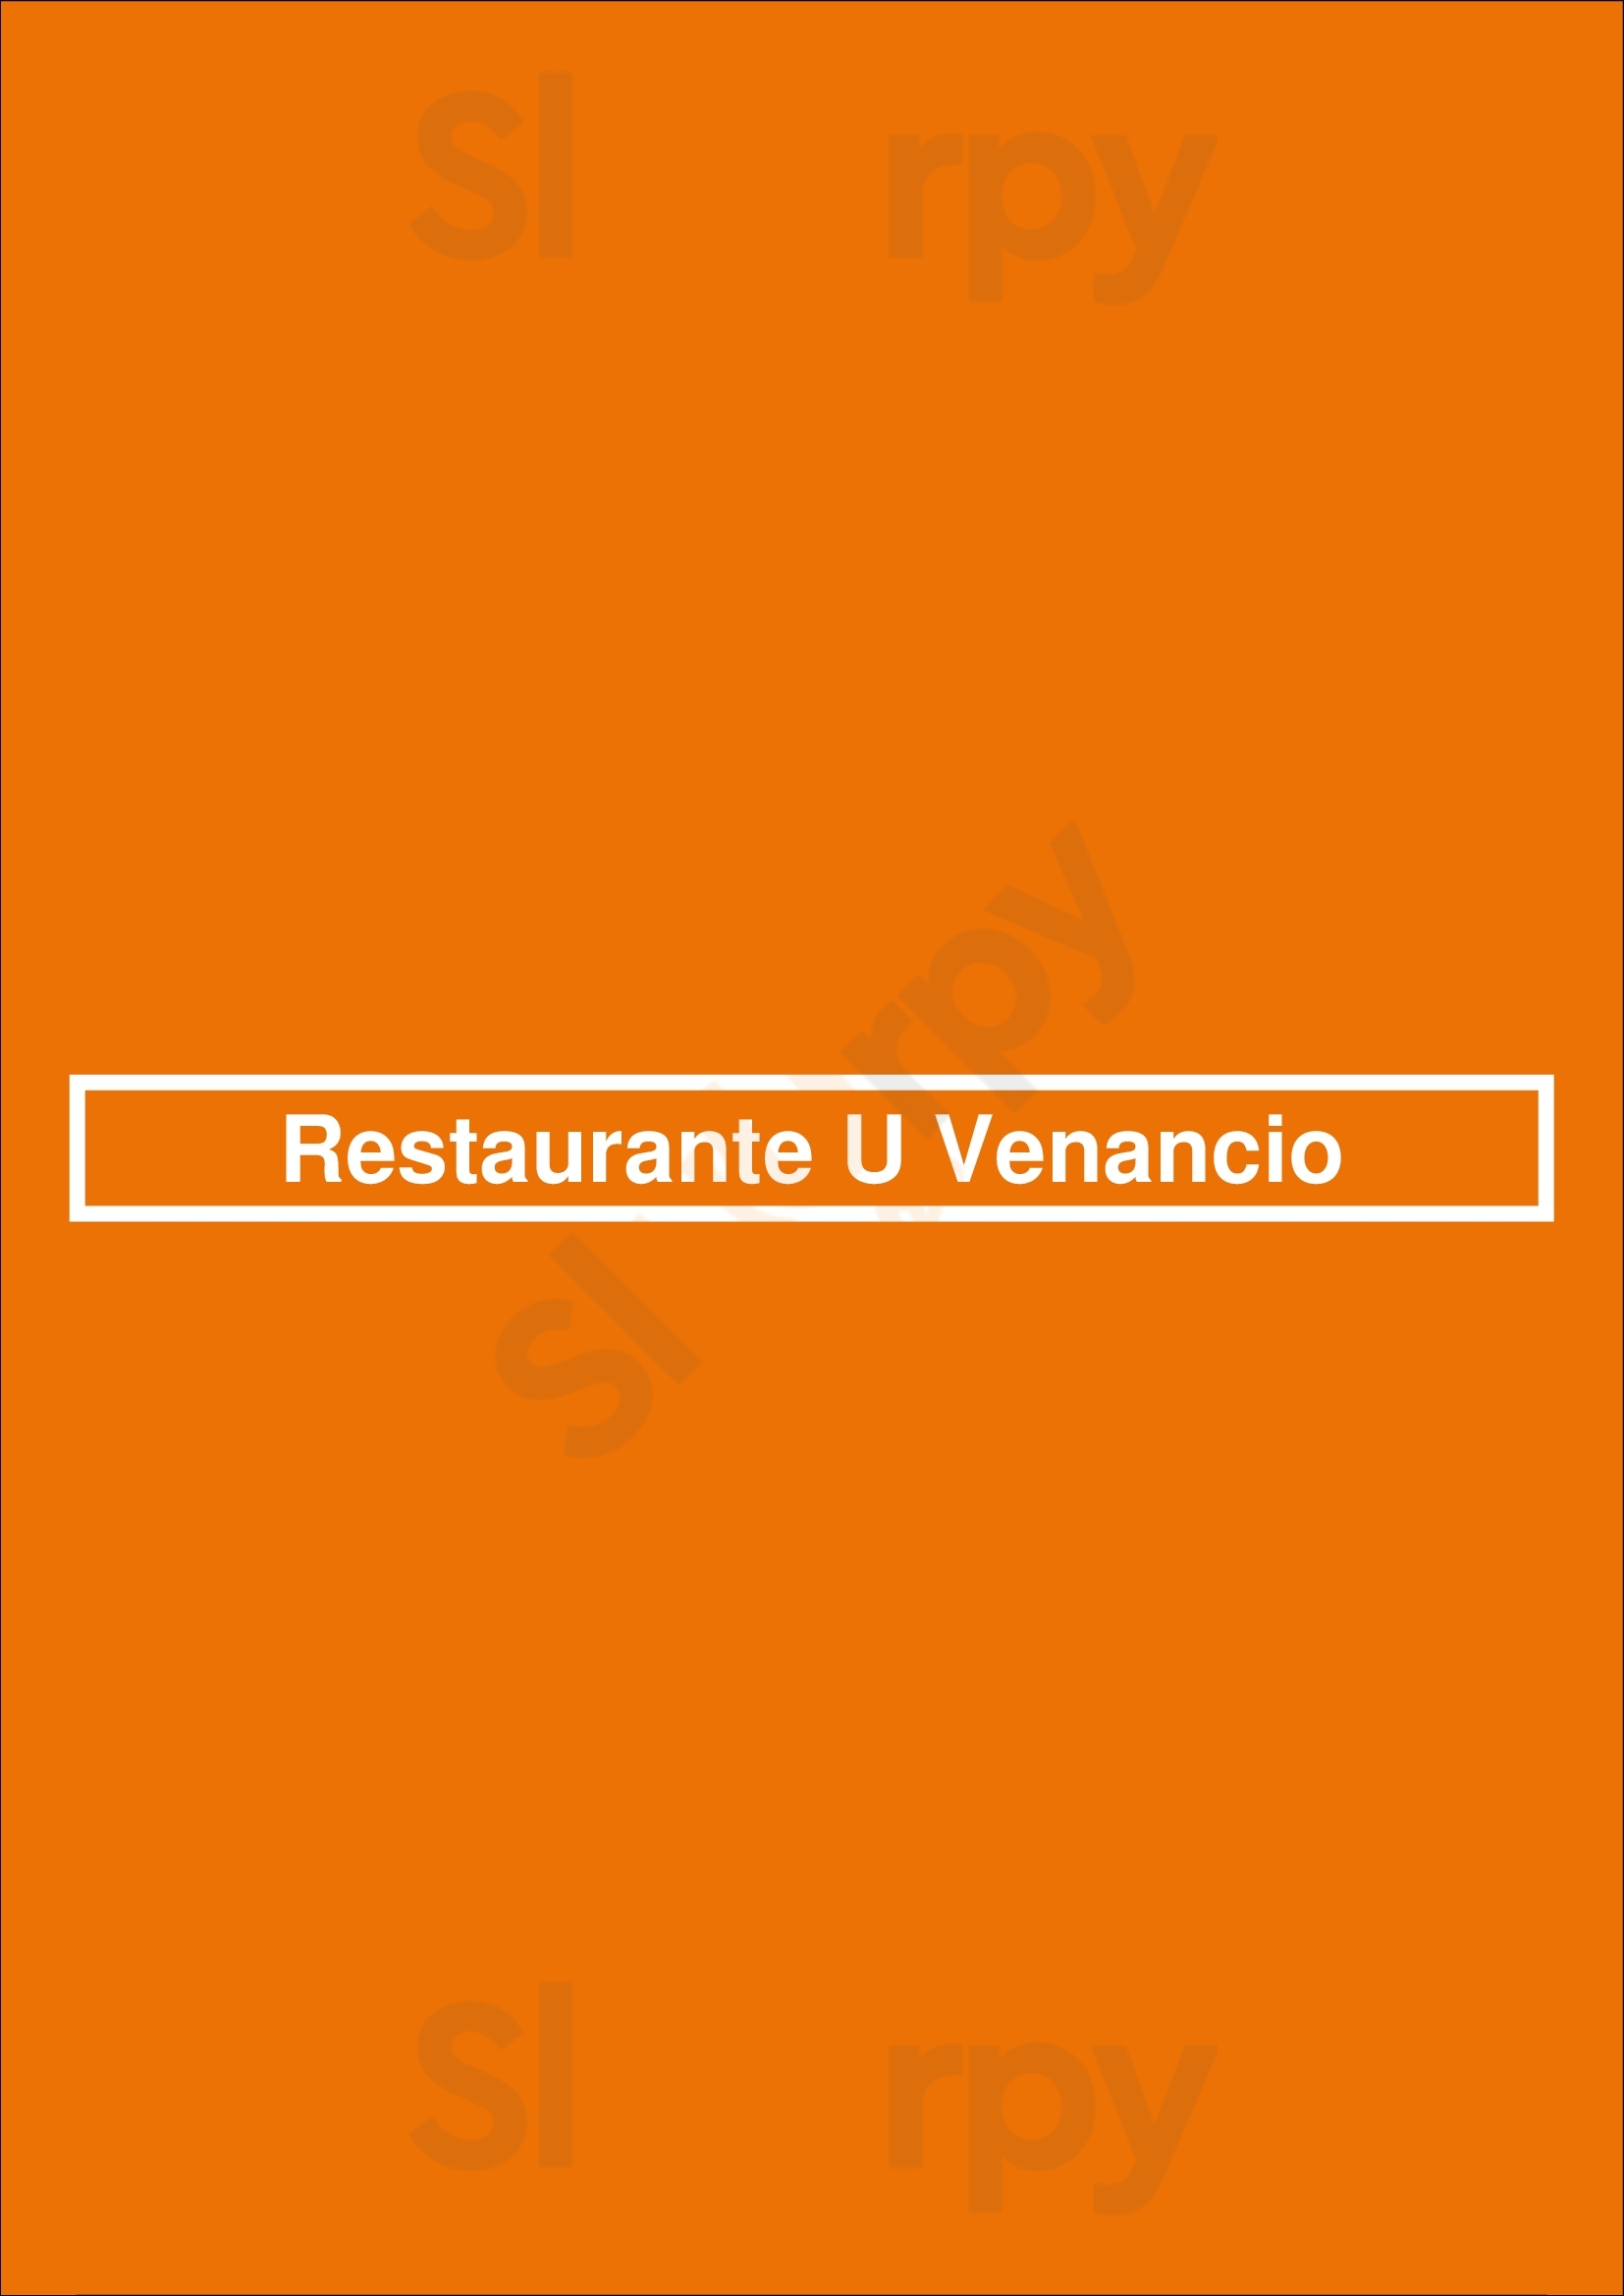 Restaurante Ú Venâncio Portimão Menu - 1